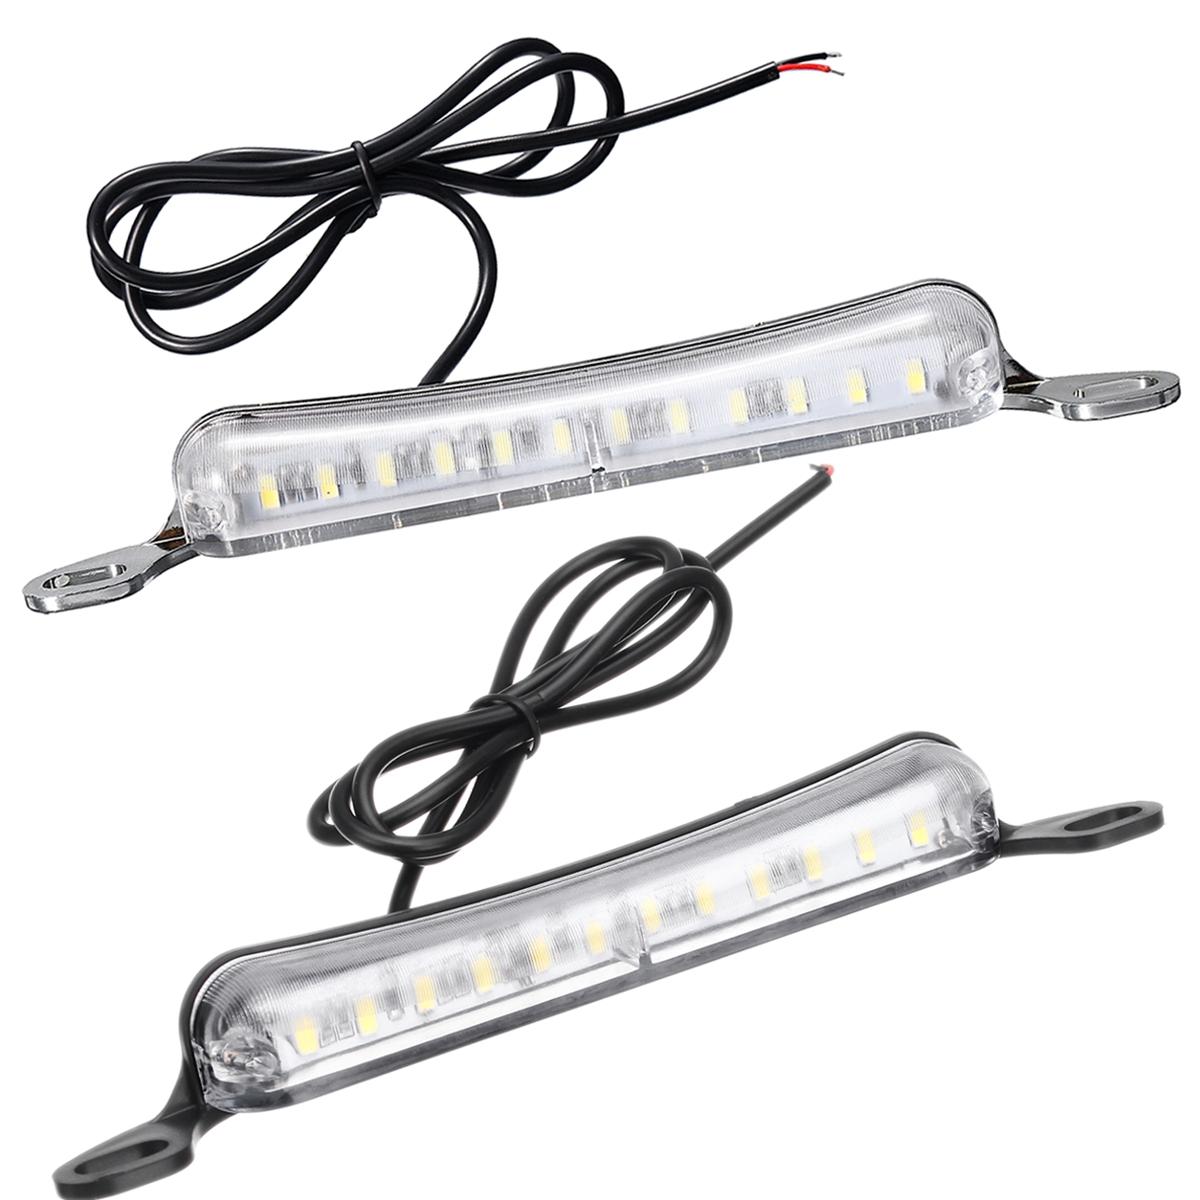 Universal 12SMD LED License Plate Lights Tail Lamp 6000K Xenon White 12V